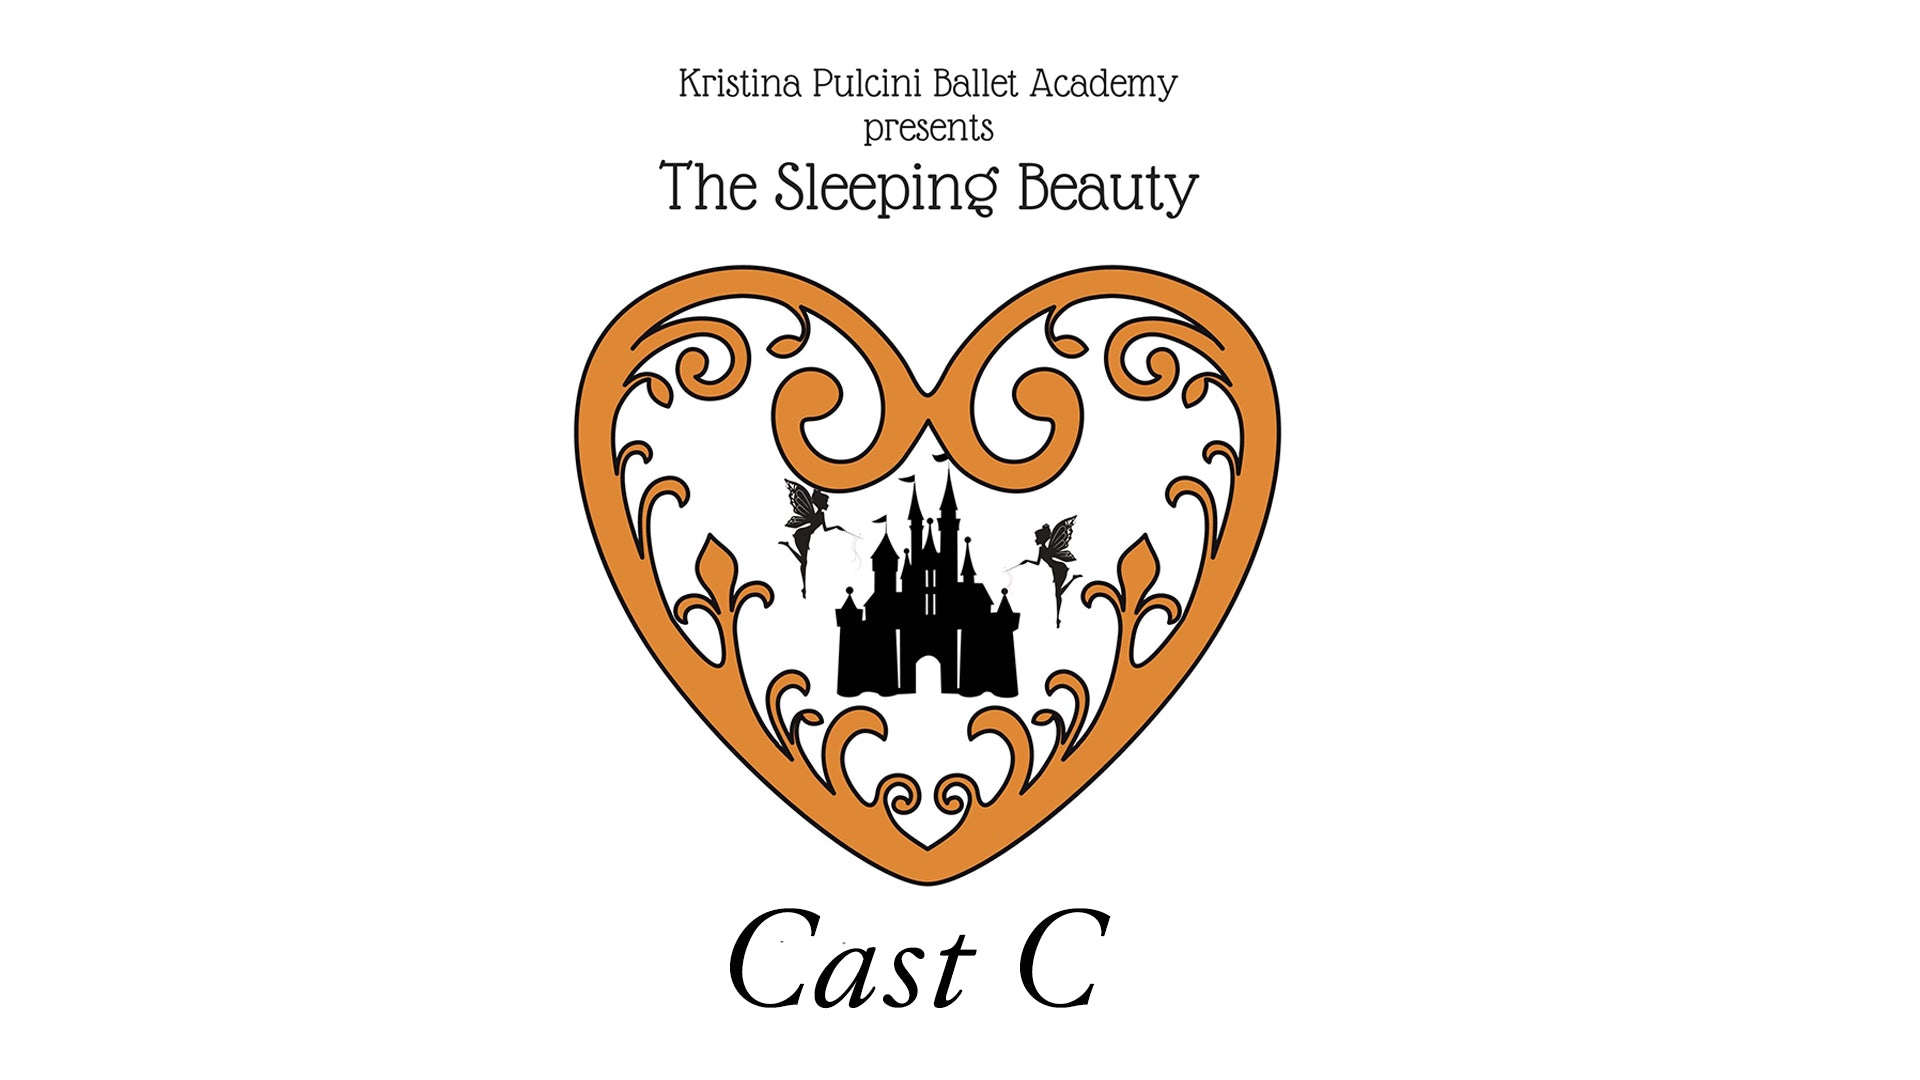 KP Ballet Academy presents "Sleeping Beauty" (2021) - Cast C